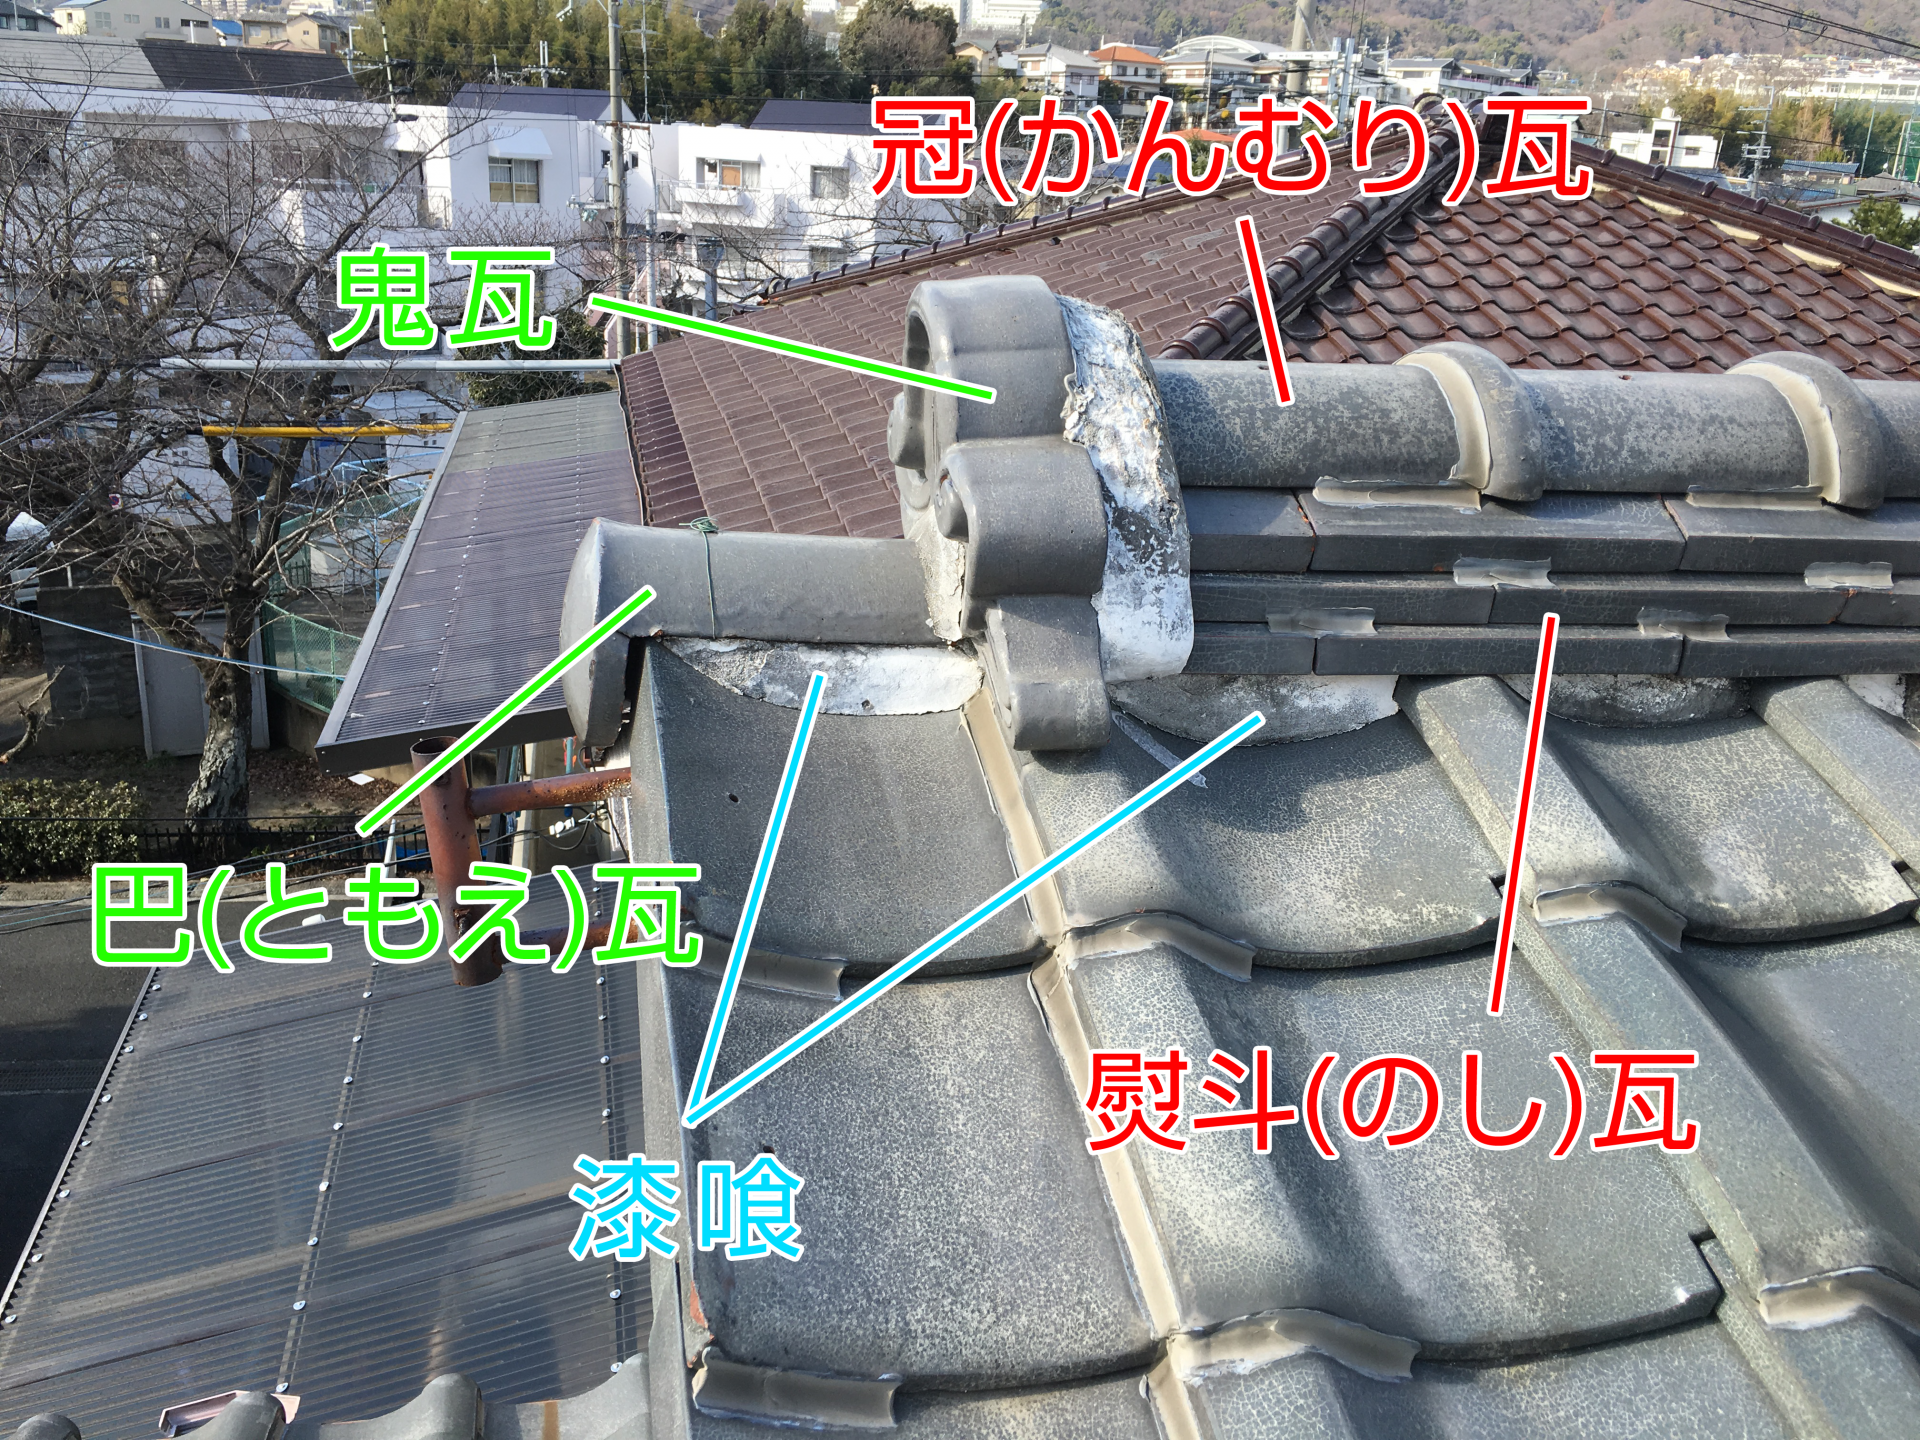 瓦屋根の棟部分の名称と役割 大阪の屋根工事なら街の屋根やさん大阪吹田店